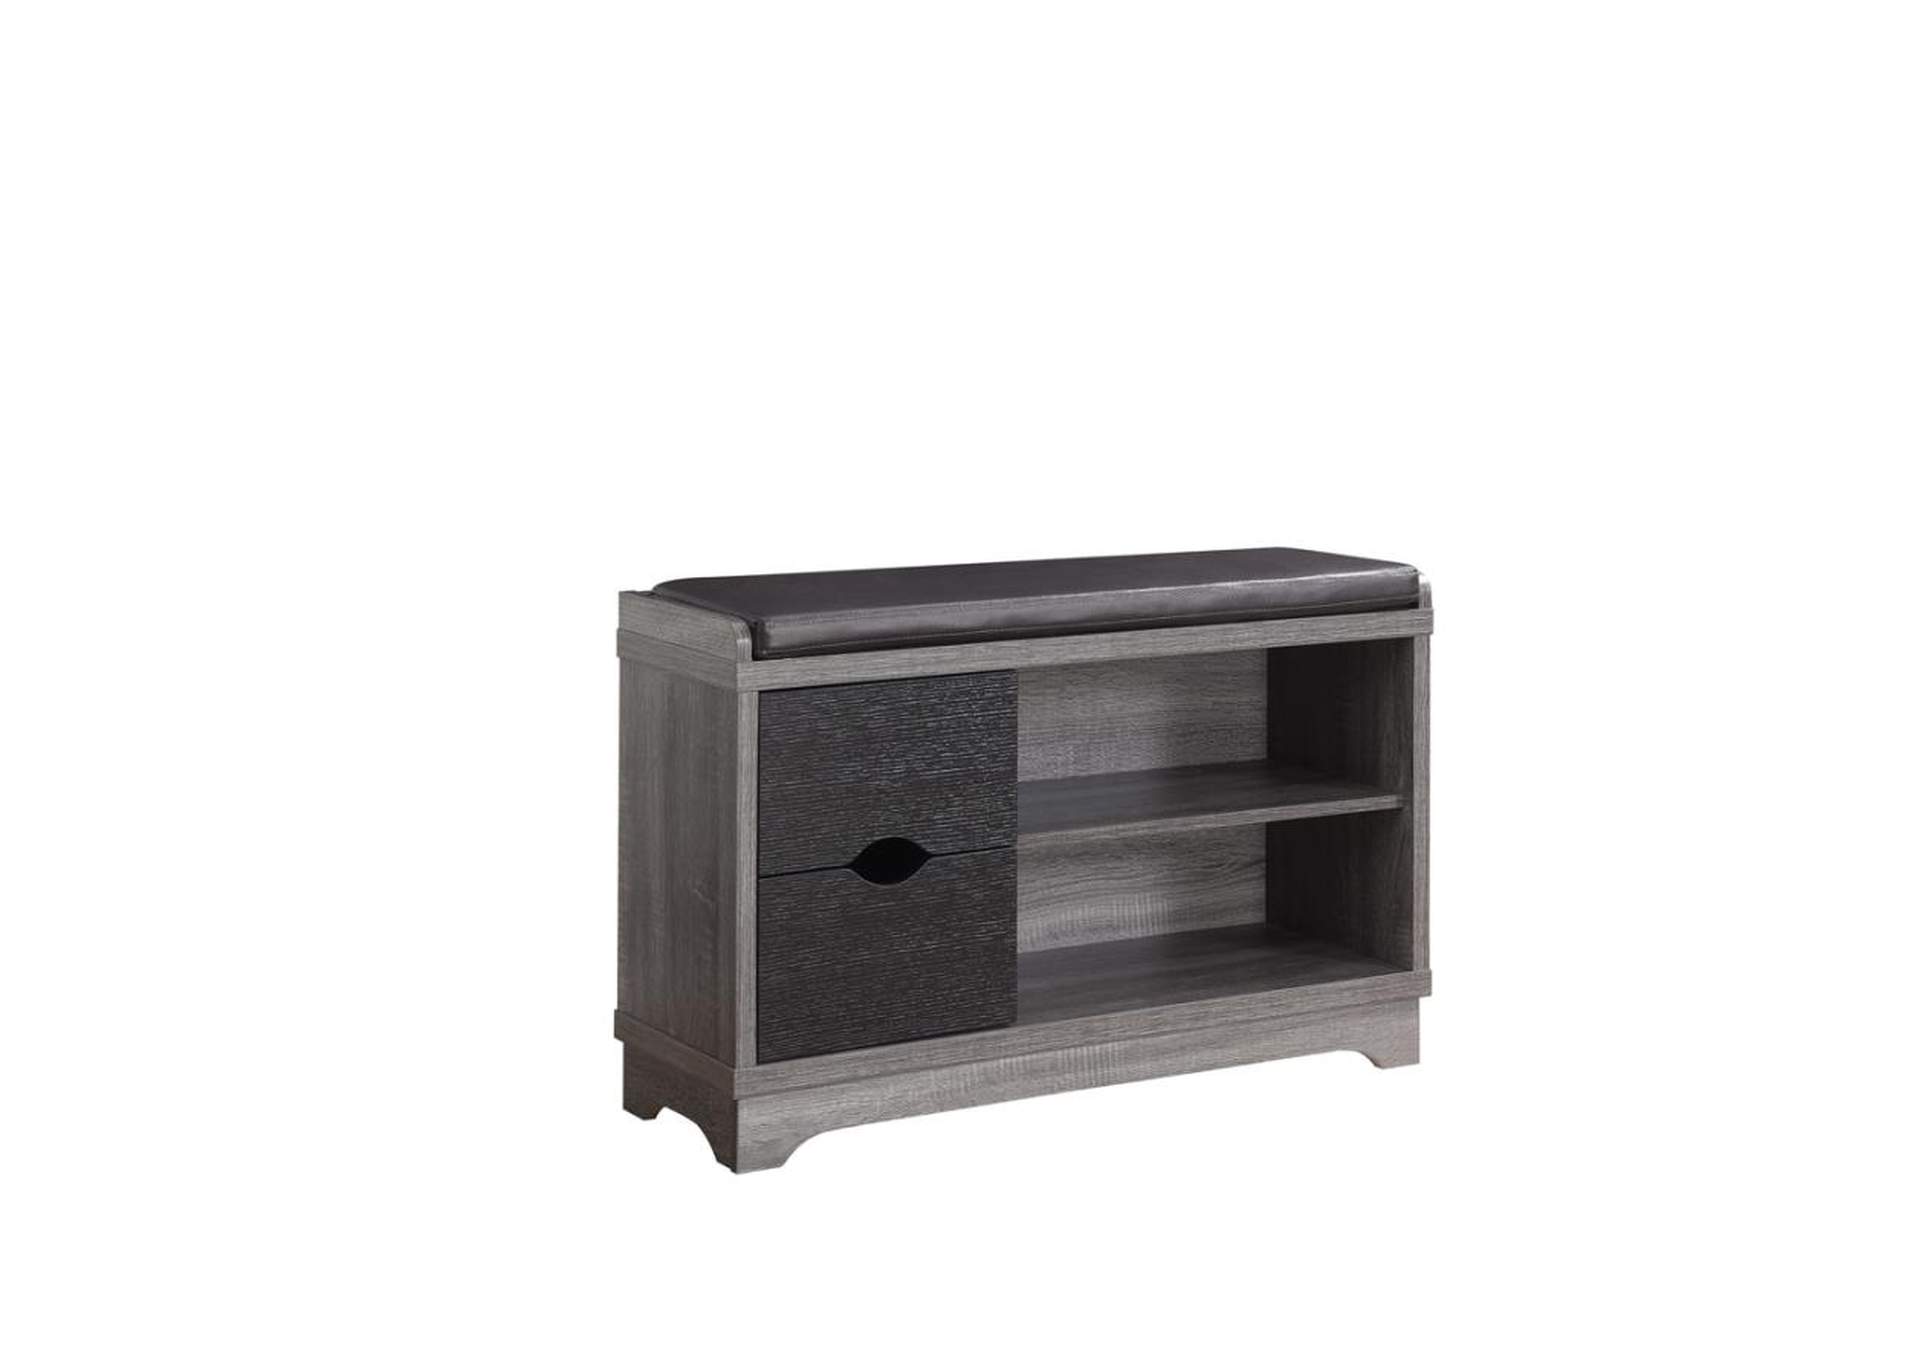 Aylin 2-Drawer Storage Bench Medium Brown And Black,Coaster Furniture